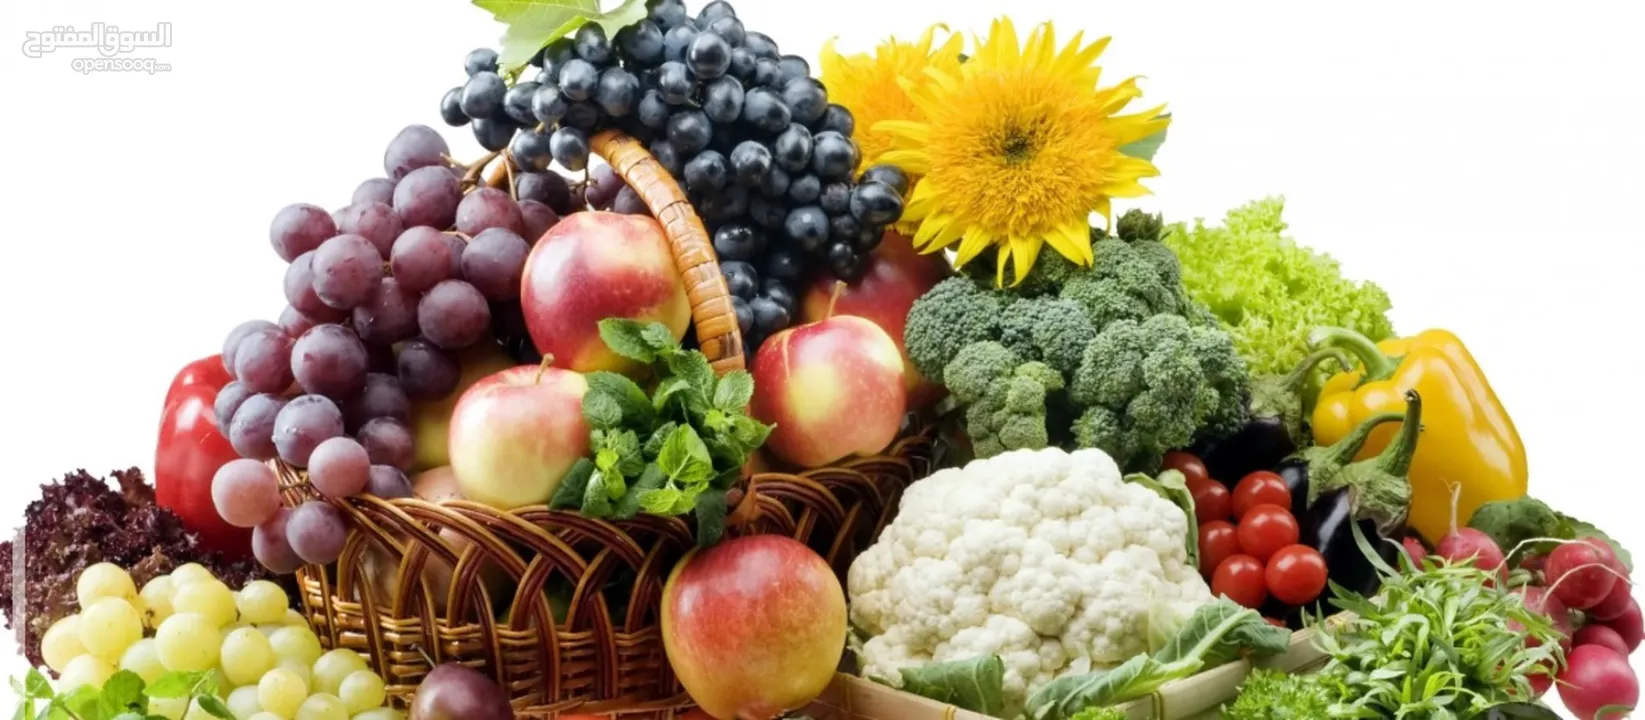 تجارة المواد الغذائية والخضروات والفواكه بالجملة.